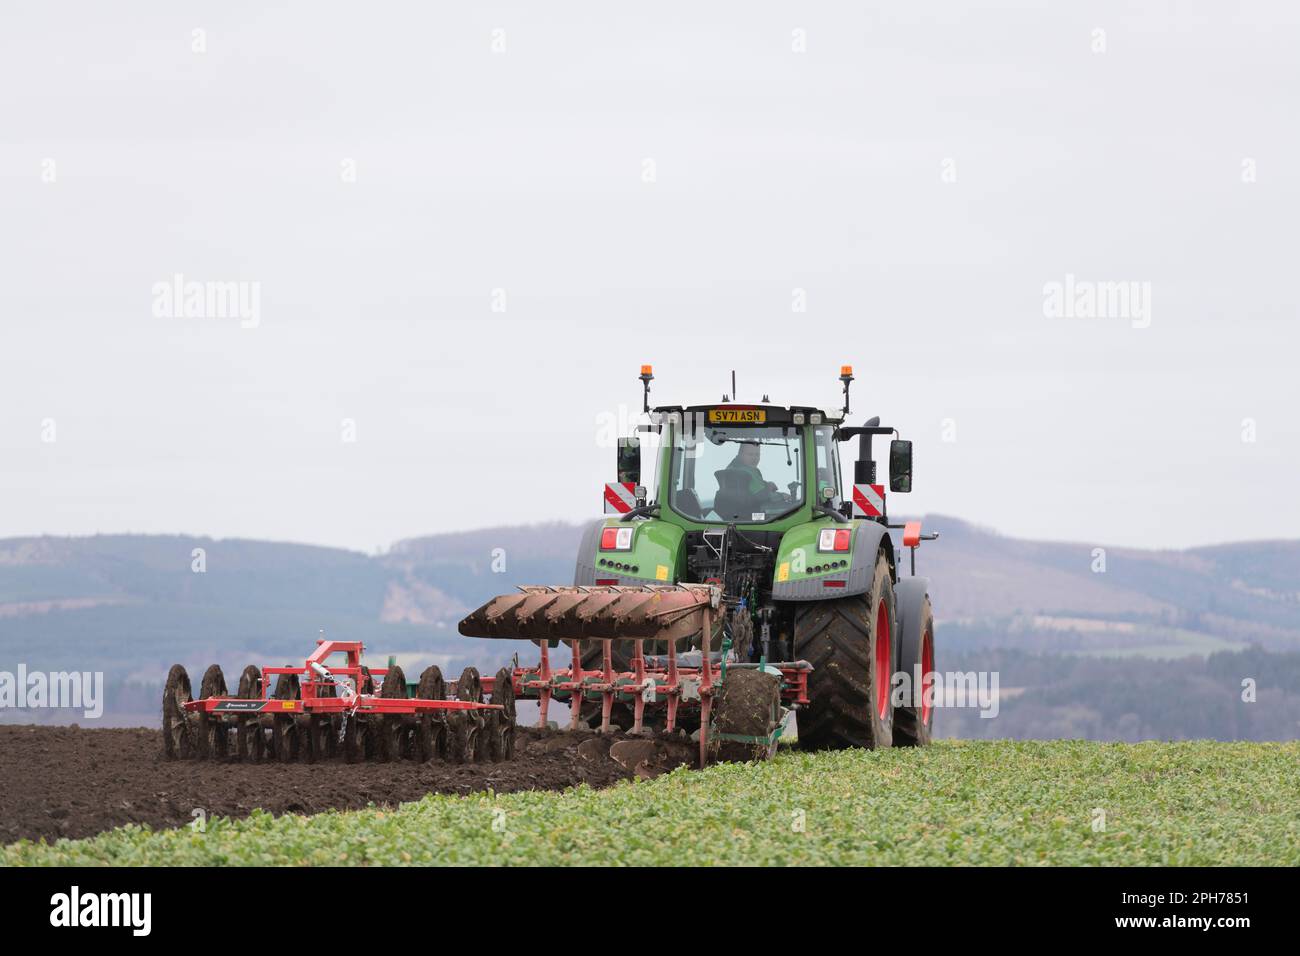 Un tracteur Fendt tractant une charrue réversible Kverneland et un labourage de double packer à Vetch, cultivé comme un fumier vert Banque D'Images